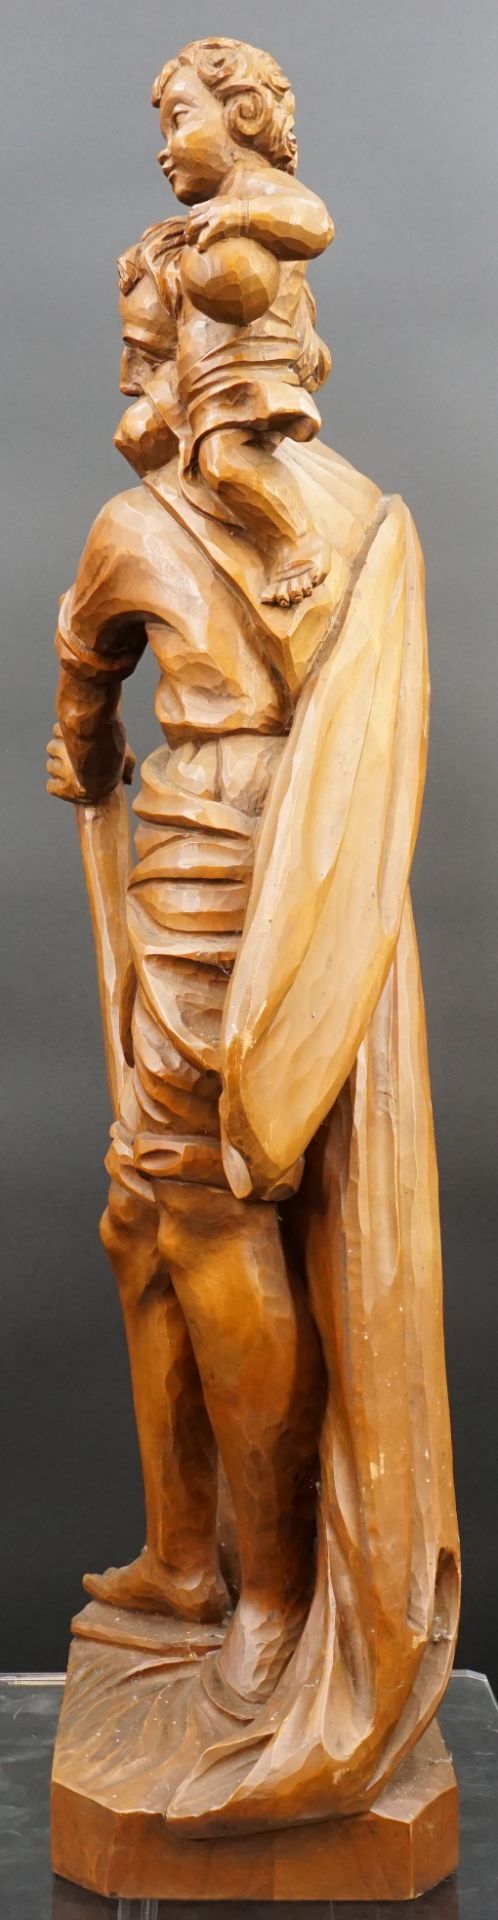 Holzfigur. Hl. Christophorus mit Christuskind. Wohl 20. Jahrhundert. - Bild 2 aus 10